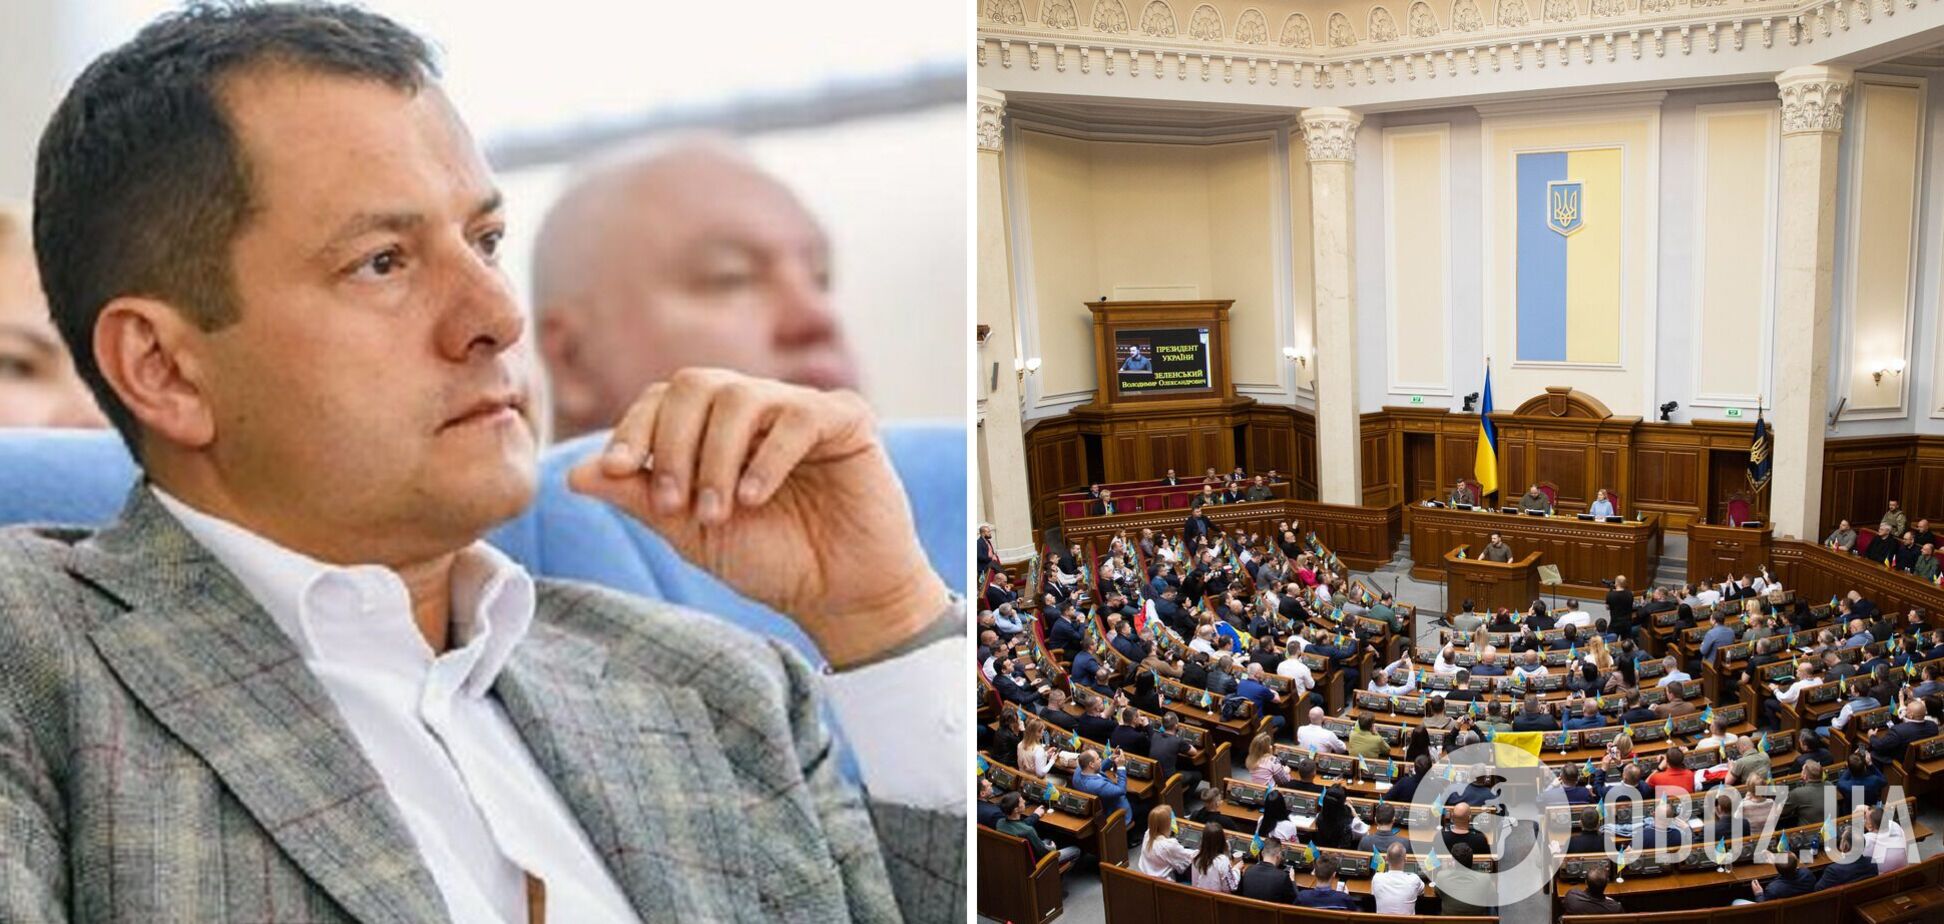 Глава группы 'Восстановление Украины' Ефимов сложил мандат нардепа